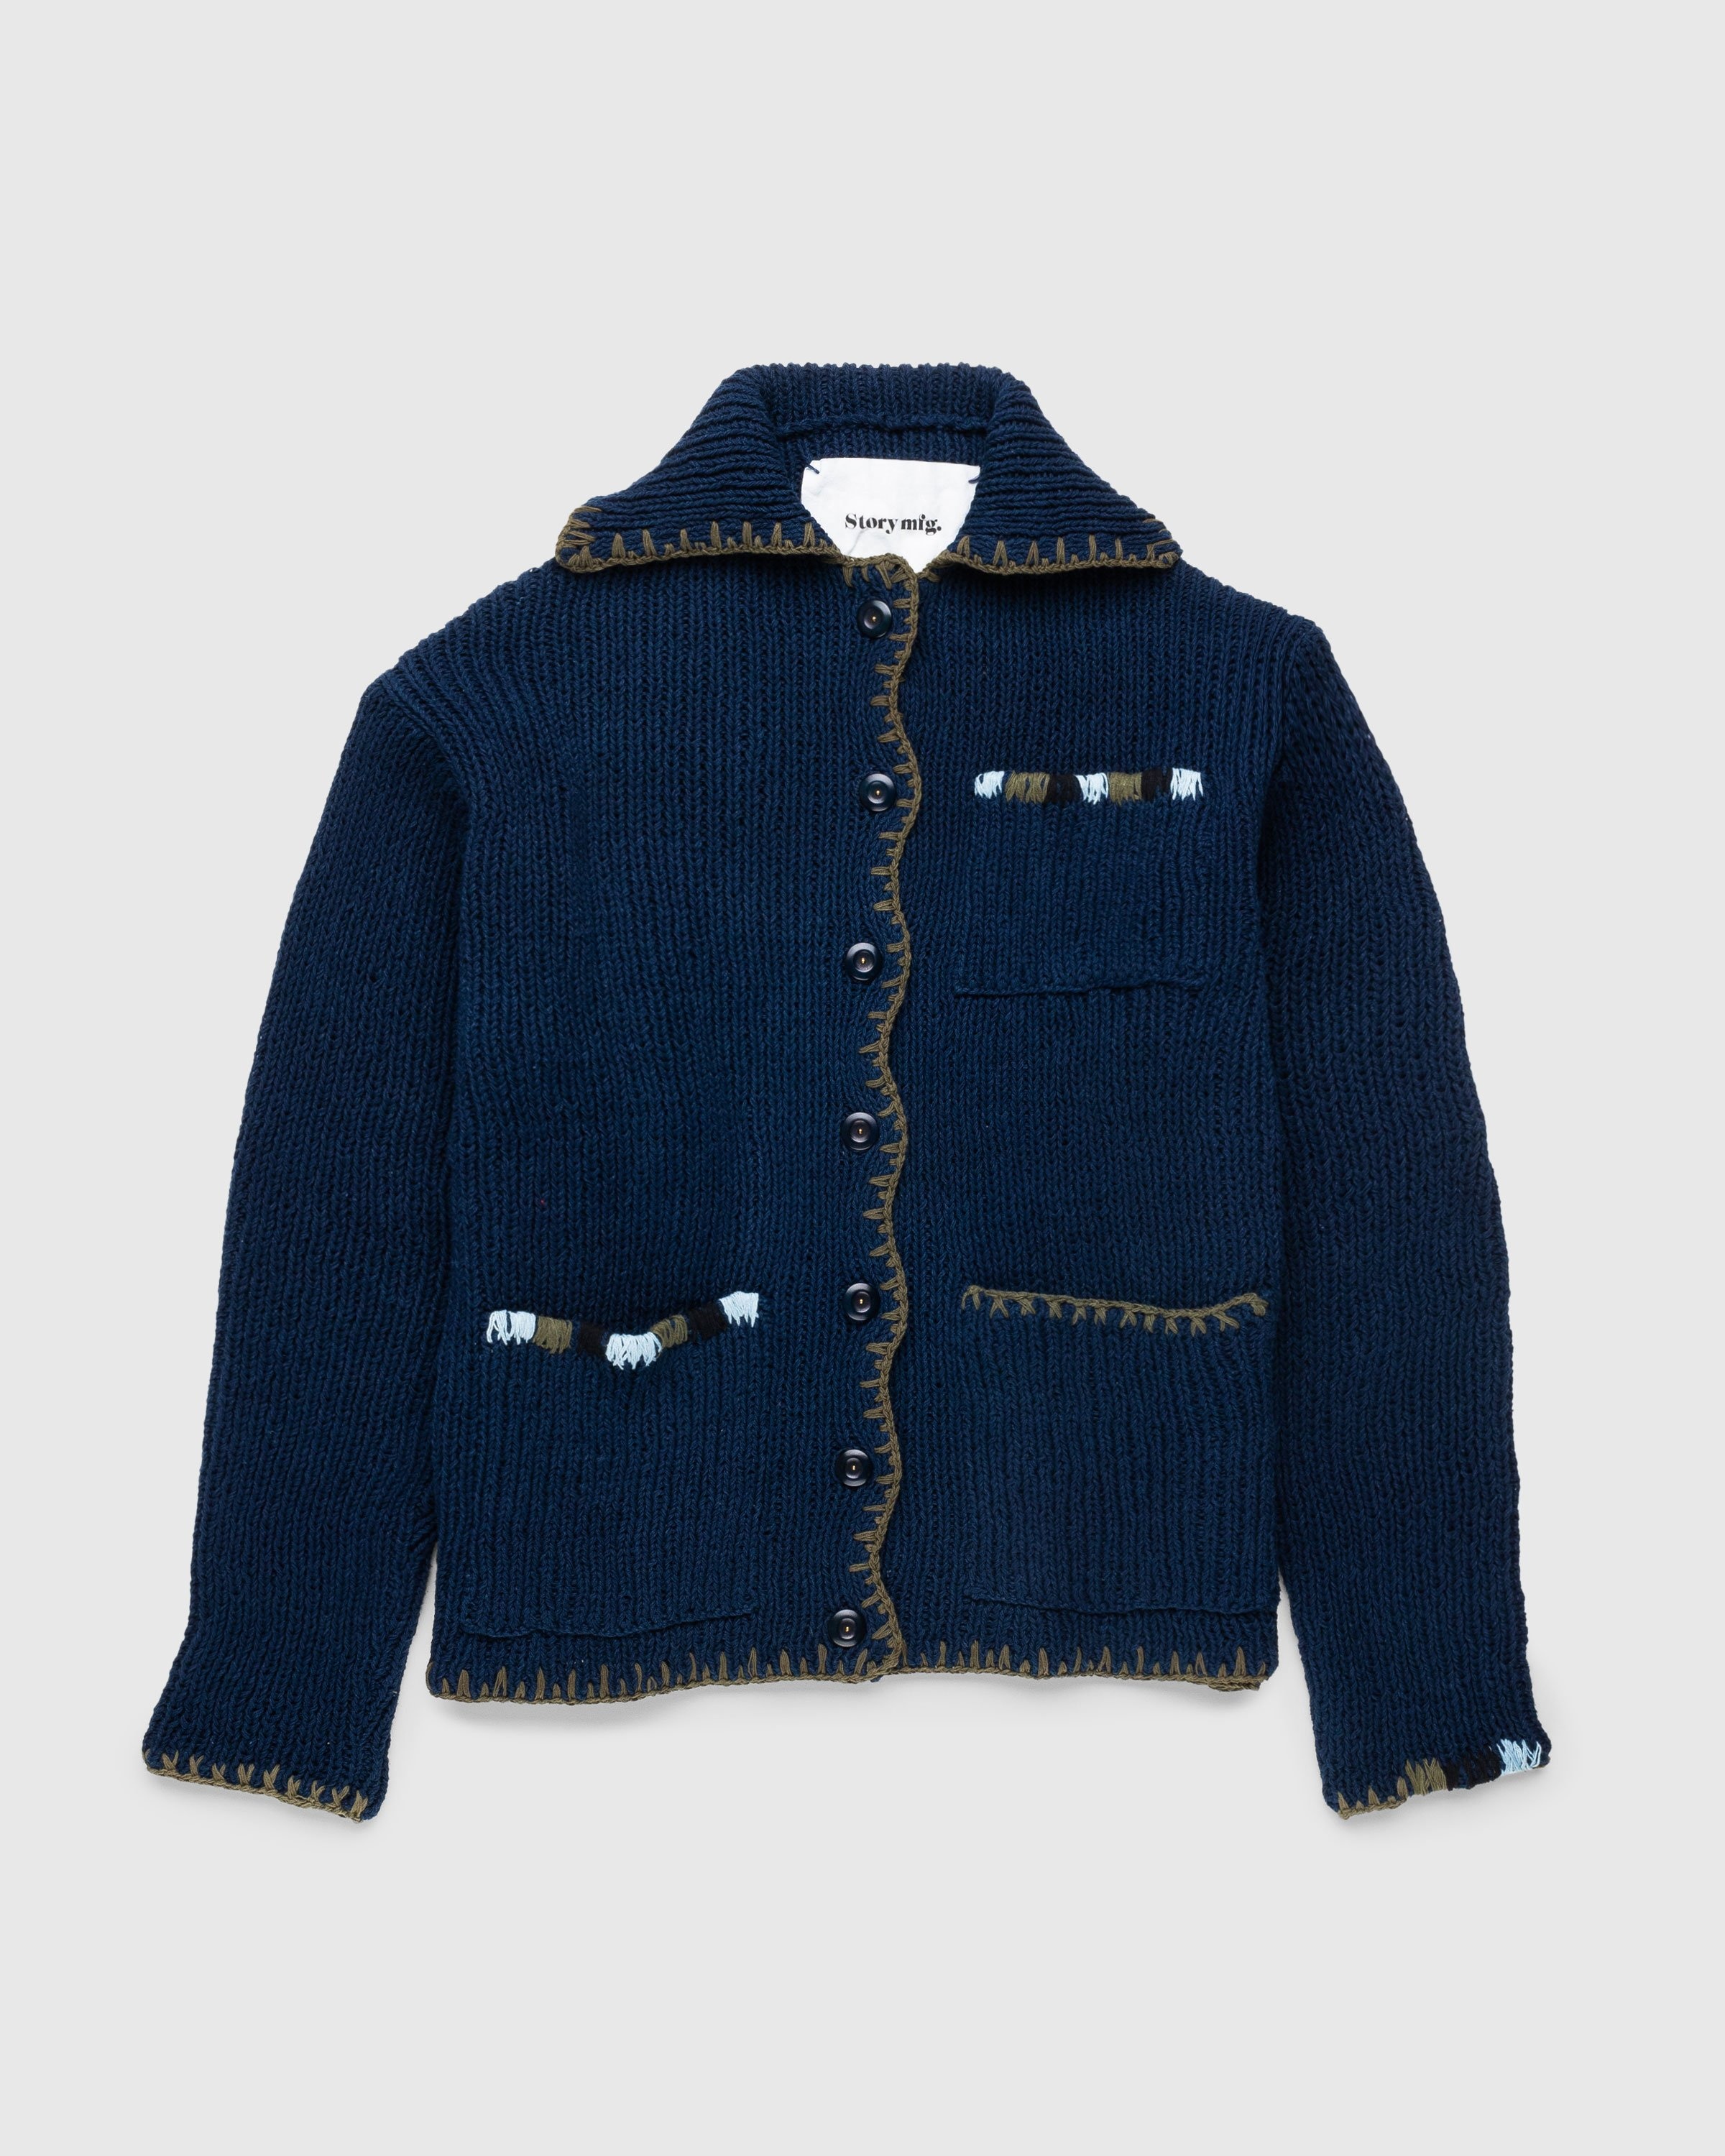 Story mfg. – Grandad Cardigan Indigo - Knitwear - Blue - Image 1